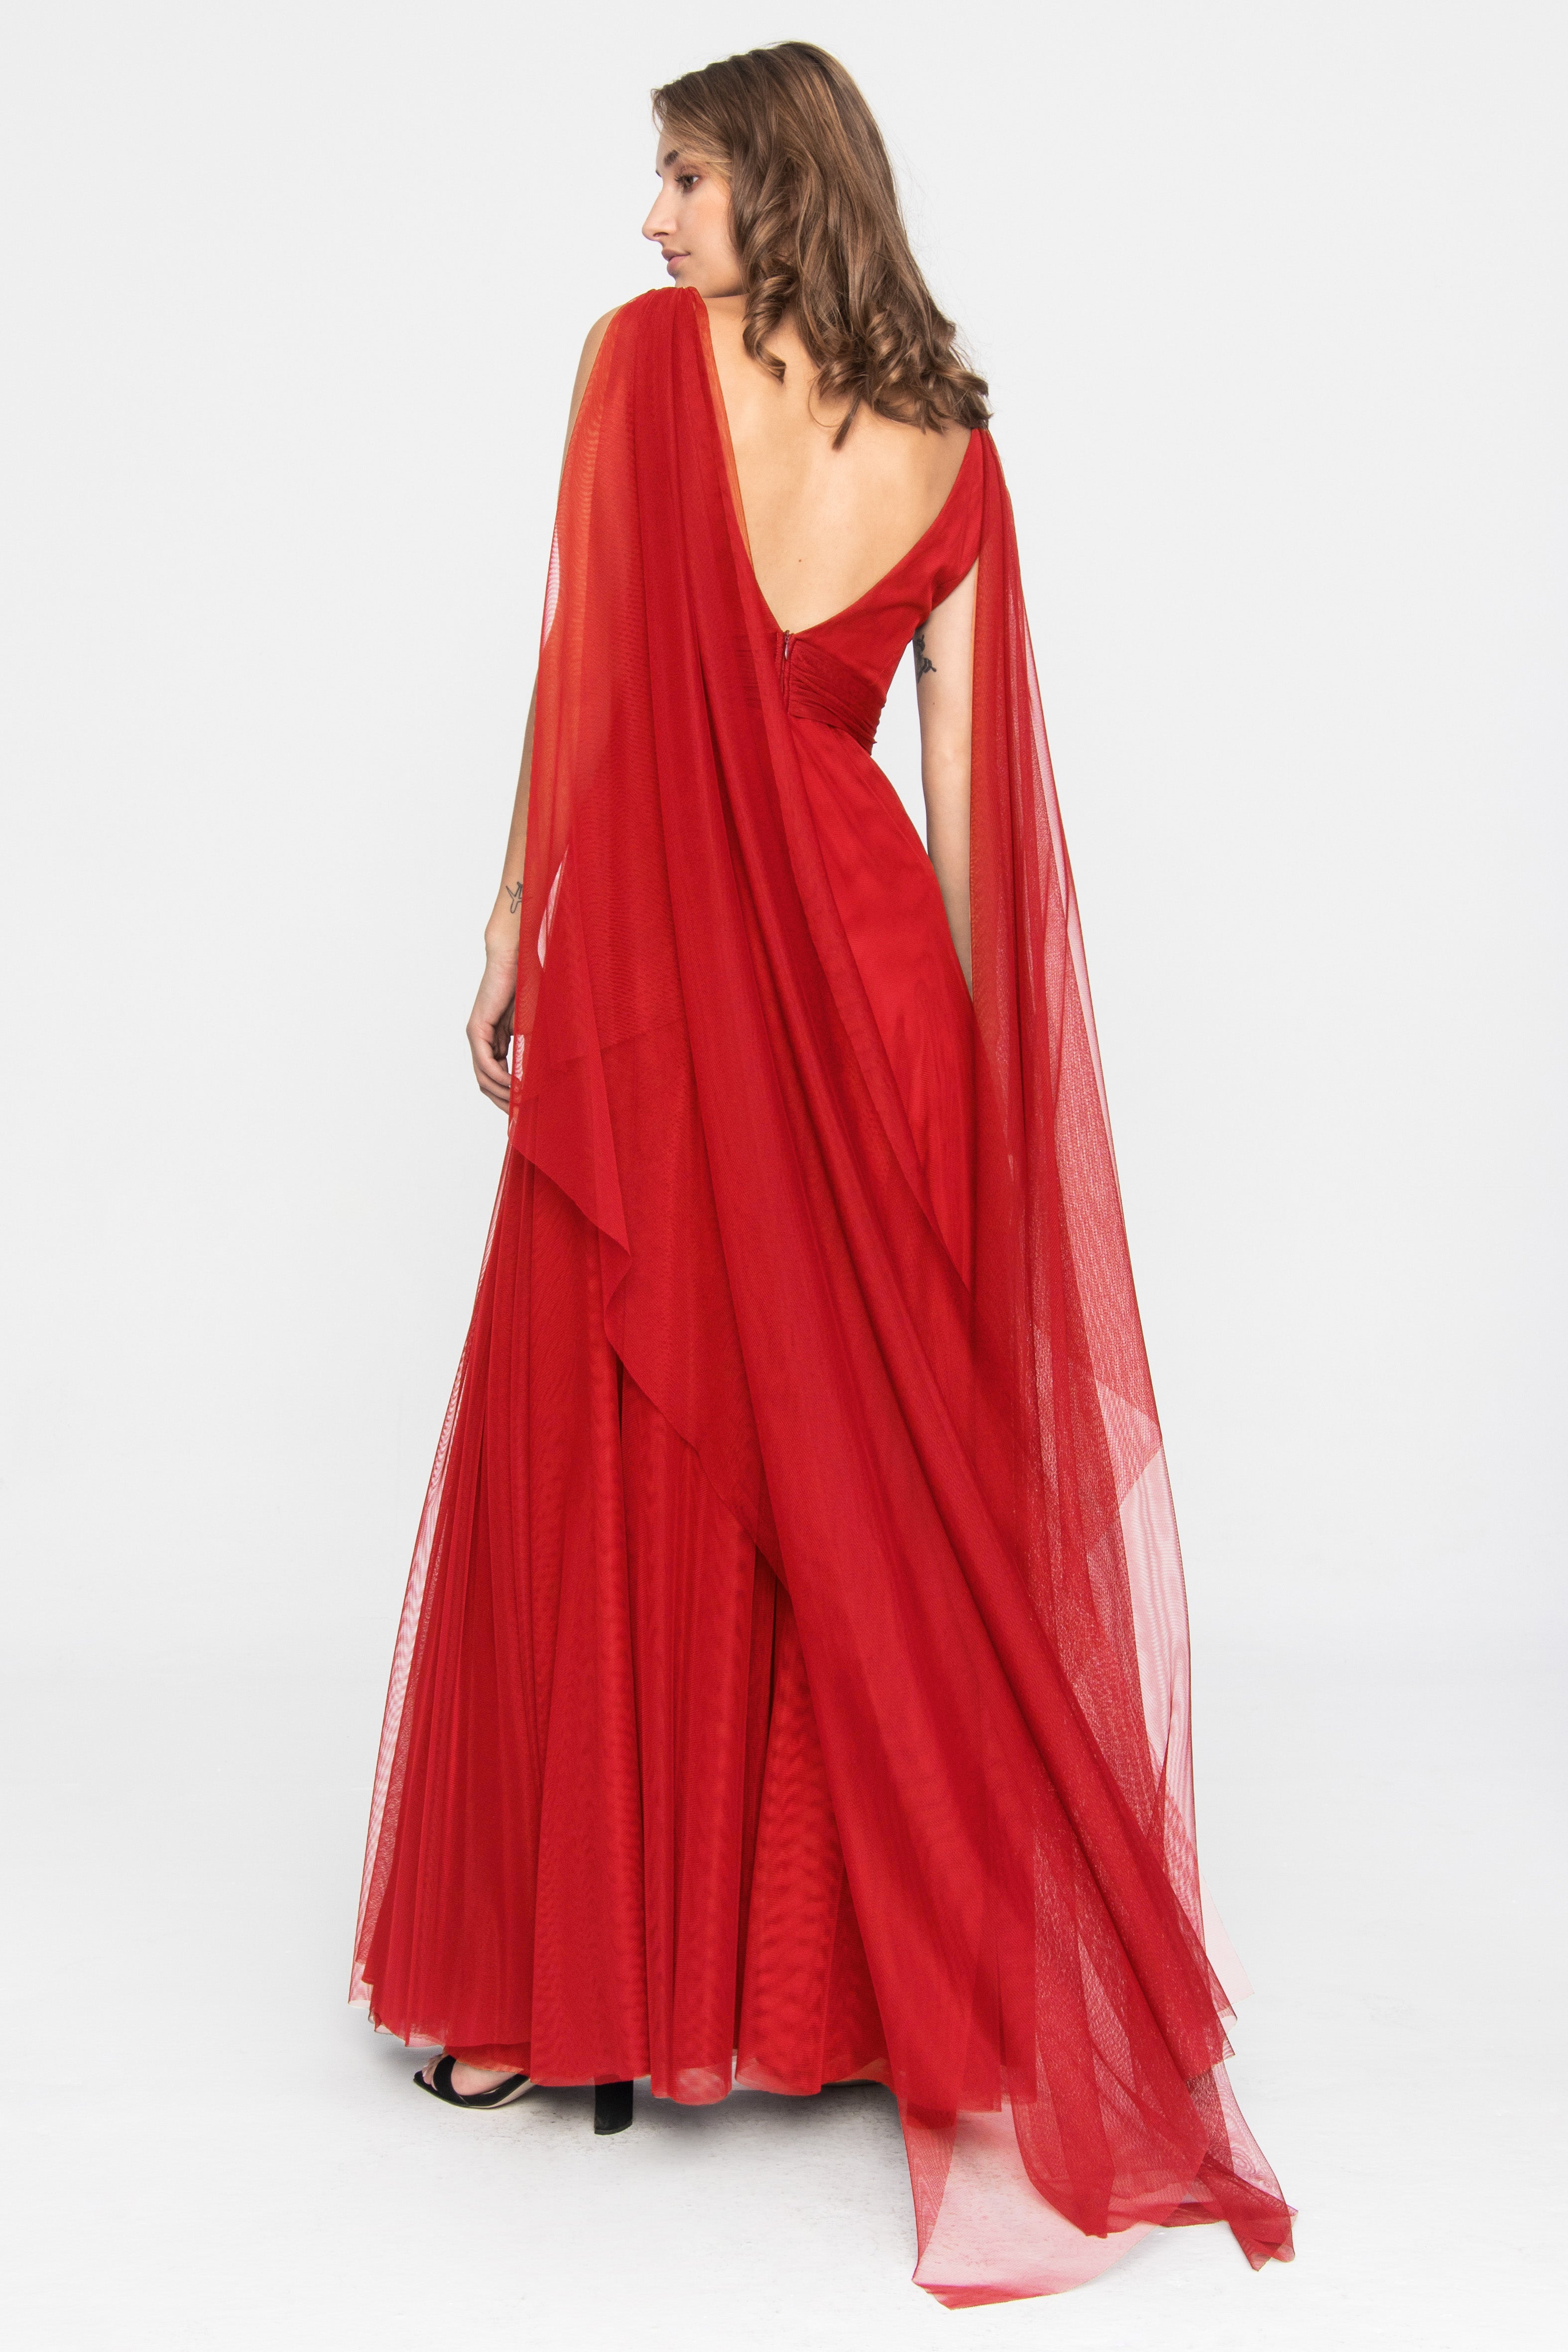 Robe de Soirée Tulle Terracotta Rouge